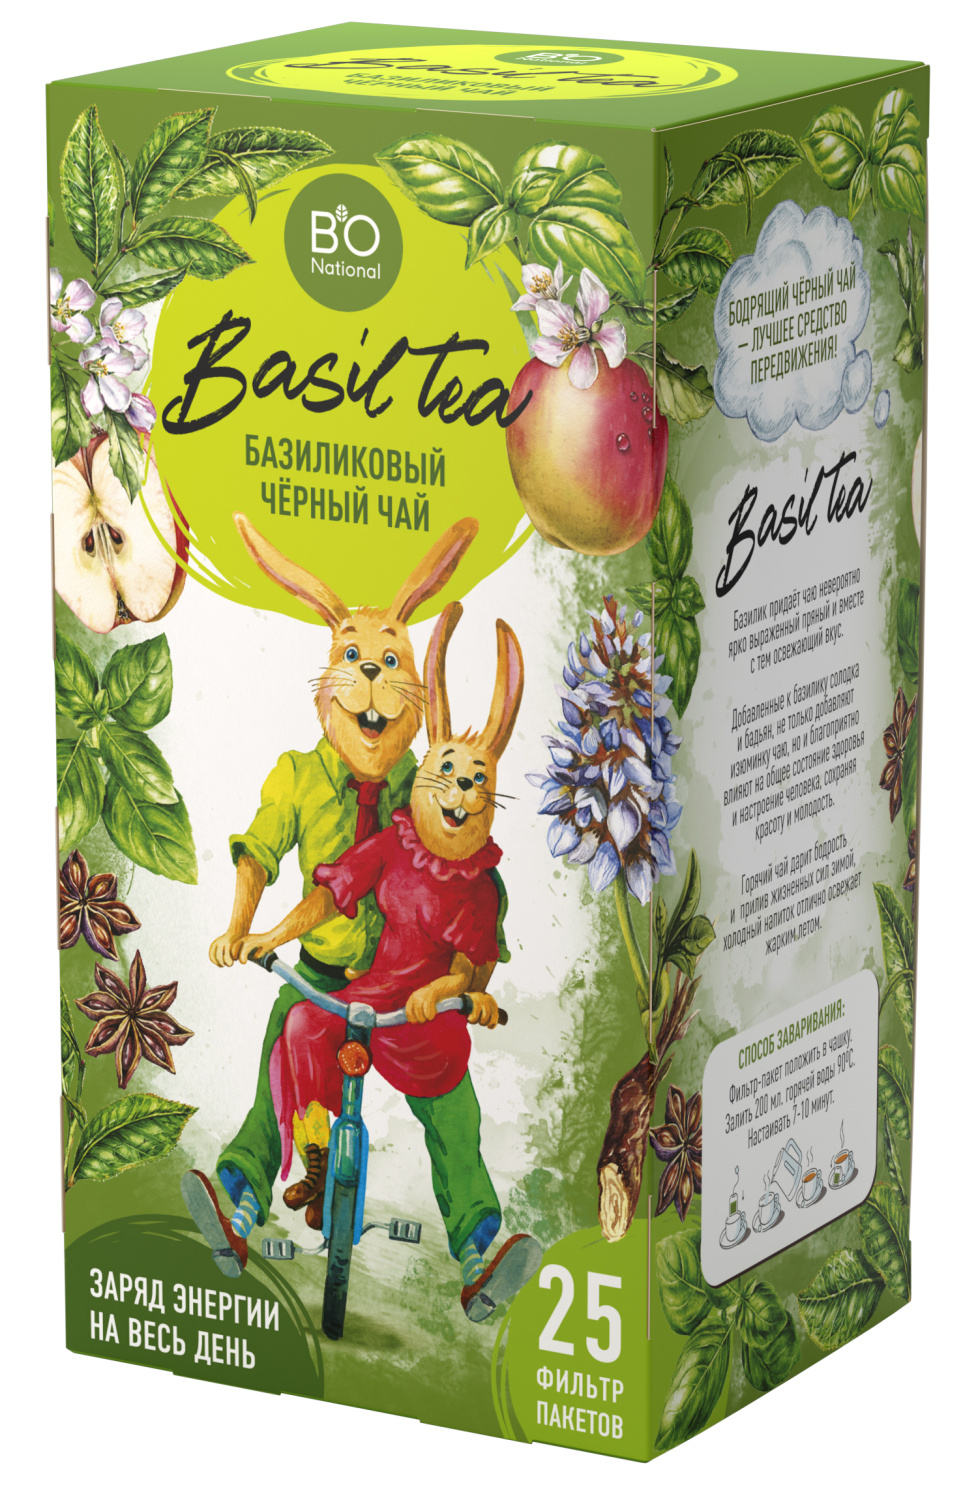 BioNational Чай Базиликовый черный базилик, солодка, бадьян, яблоко 25 фильтр-пакетов